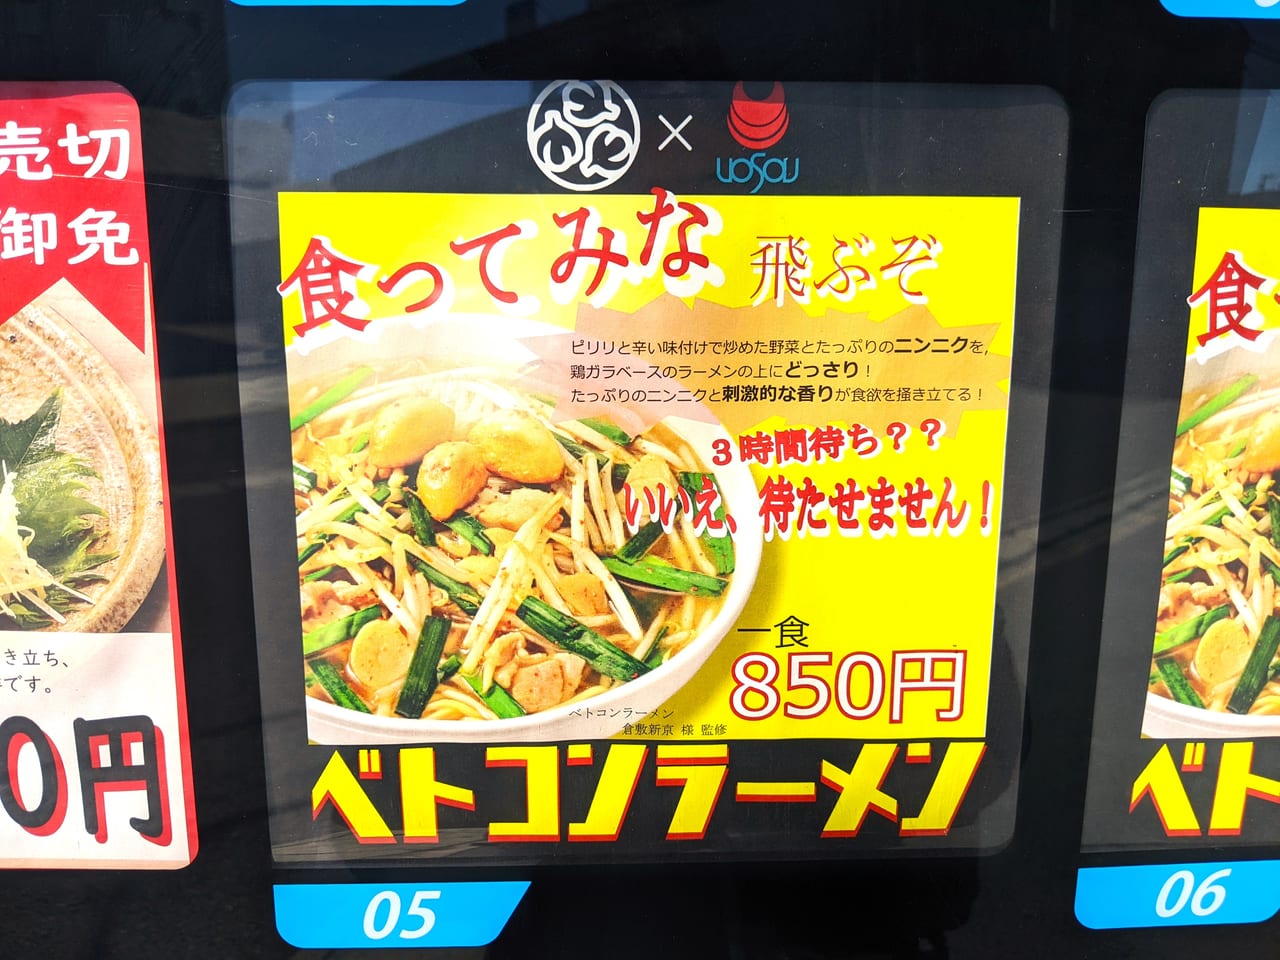 株式会社魚宗フーズの冷凍自販機